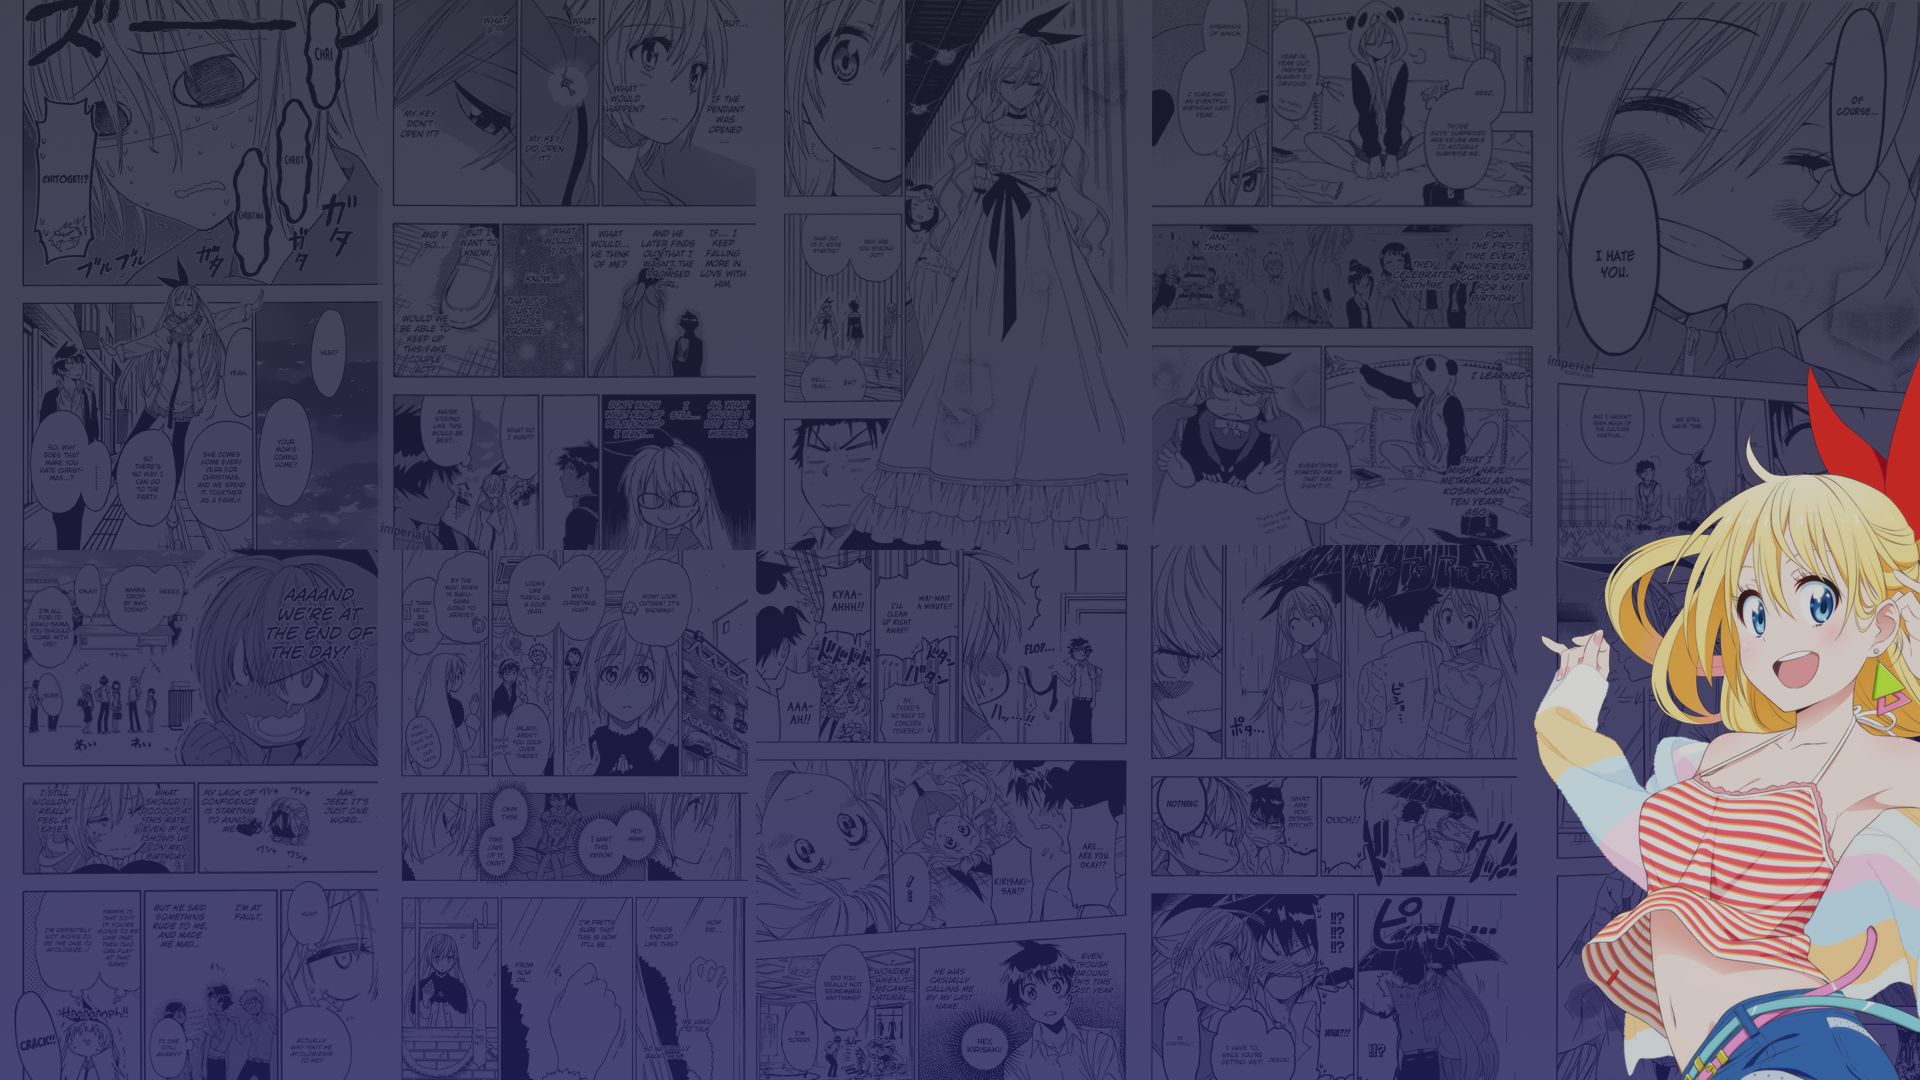 Descarga gratuita de fondo de pantalla para móvil de Animado, Chitoge Kirisaki, Nisekoi.